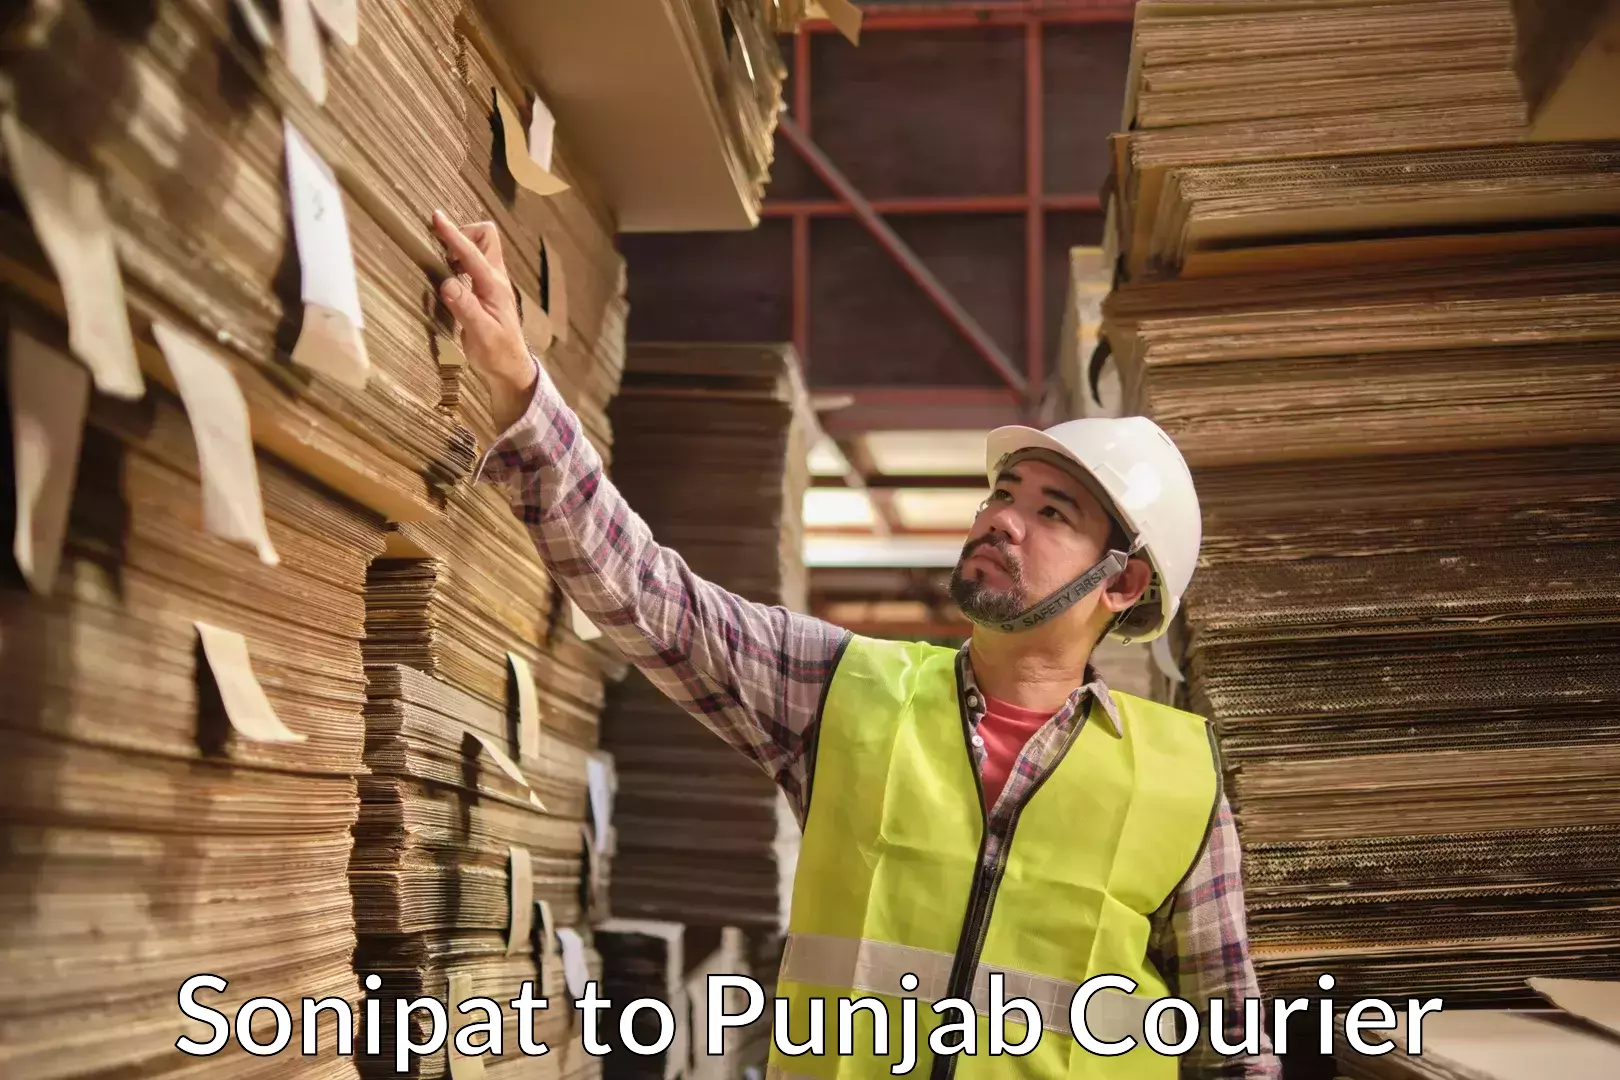 Furniture moving experts Sonipat to Punjab